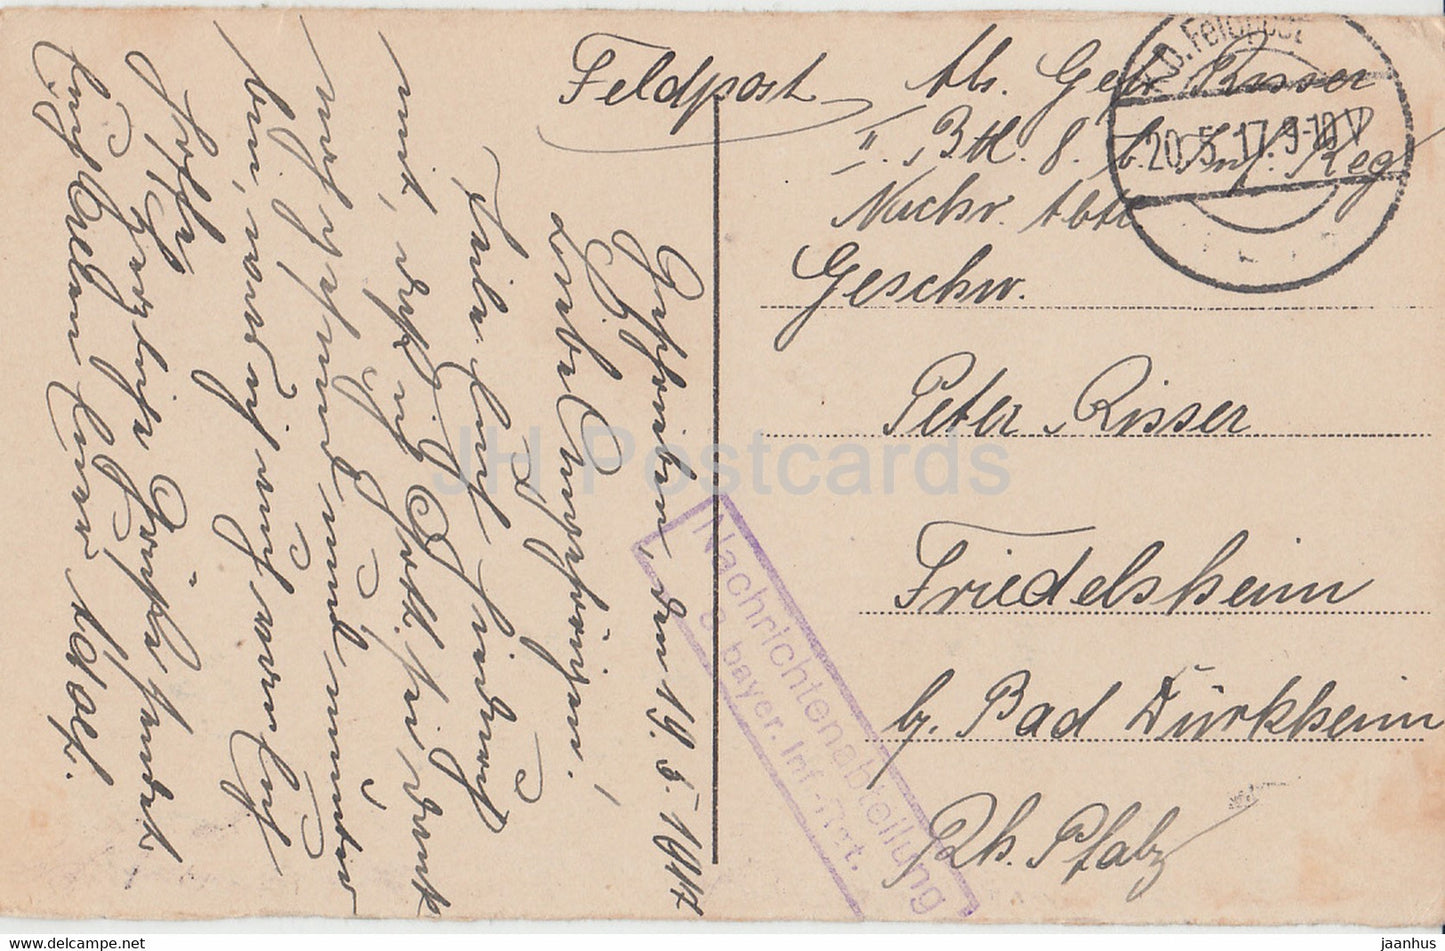 Warszawa - Ratusz - Warschauer Rathaus - Feldpost - alte Postkarte - 1917 - Polen - gebraucht